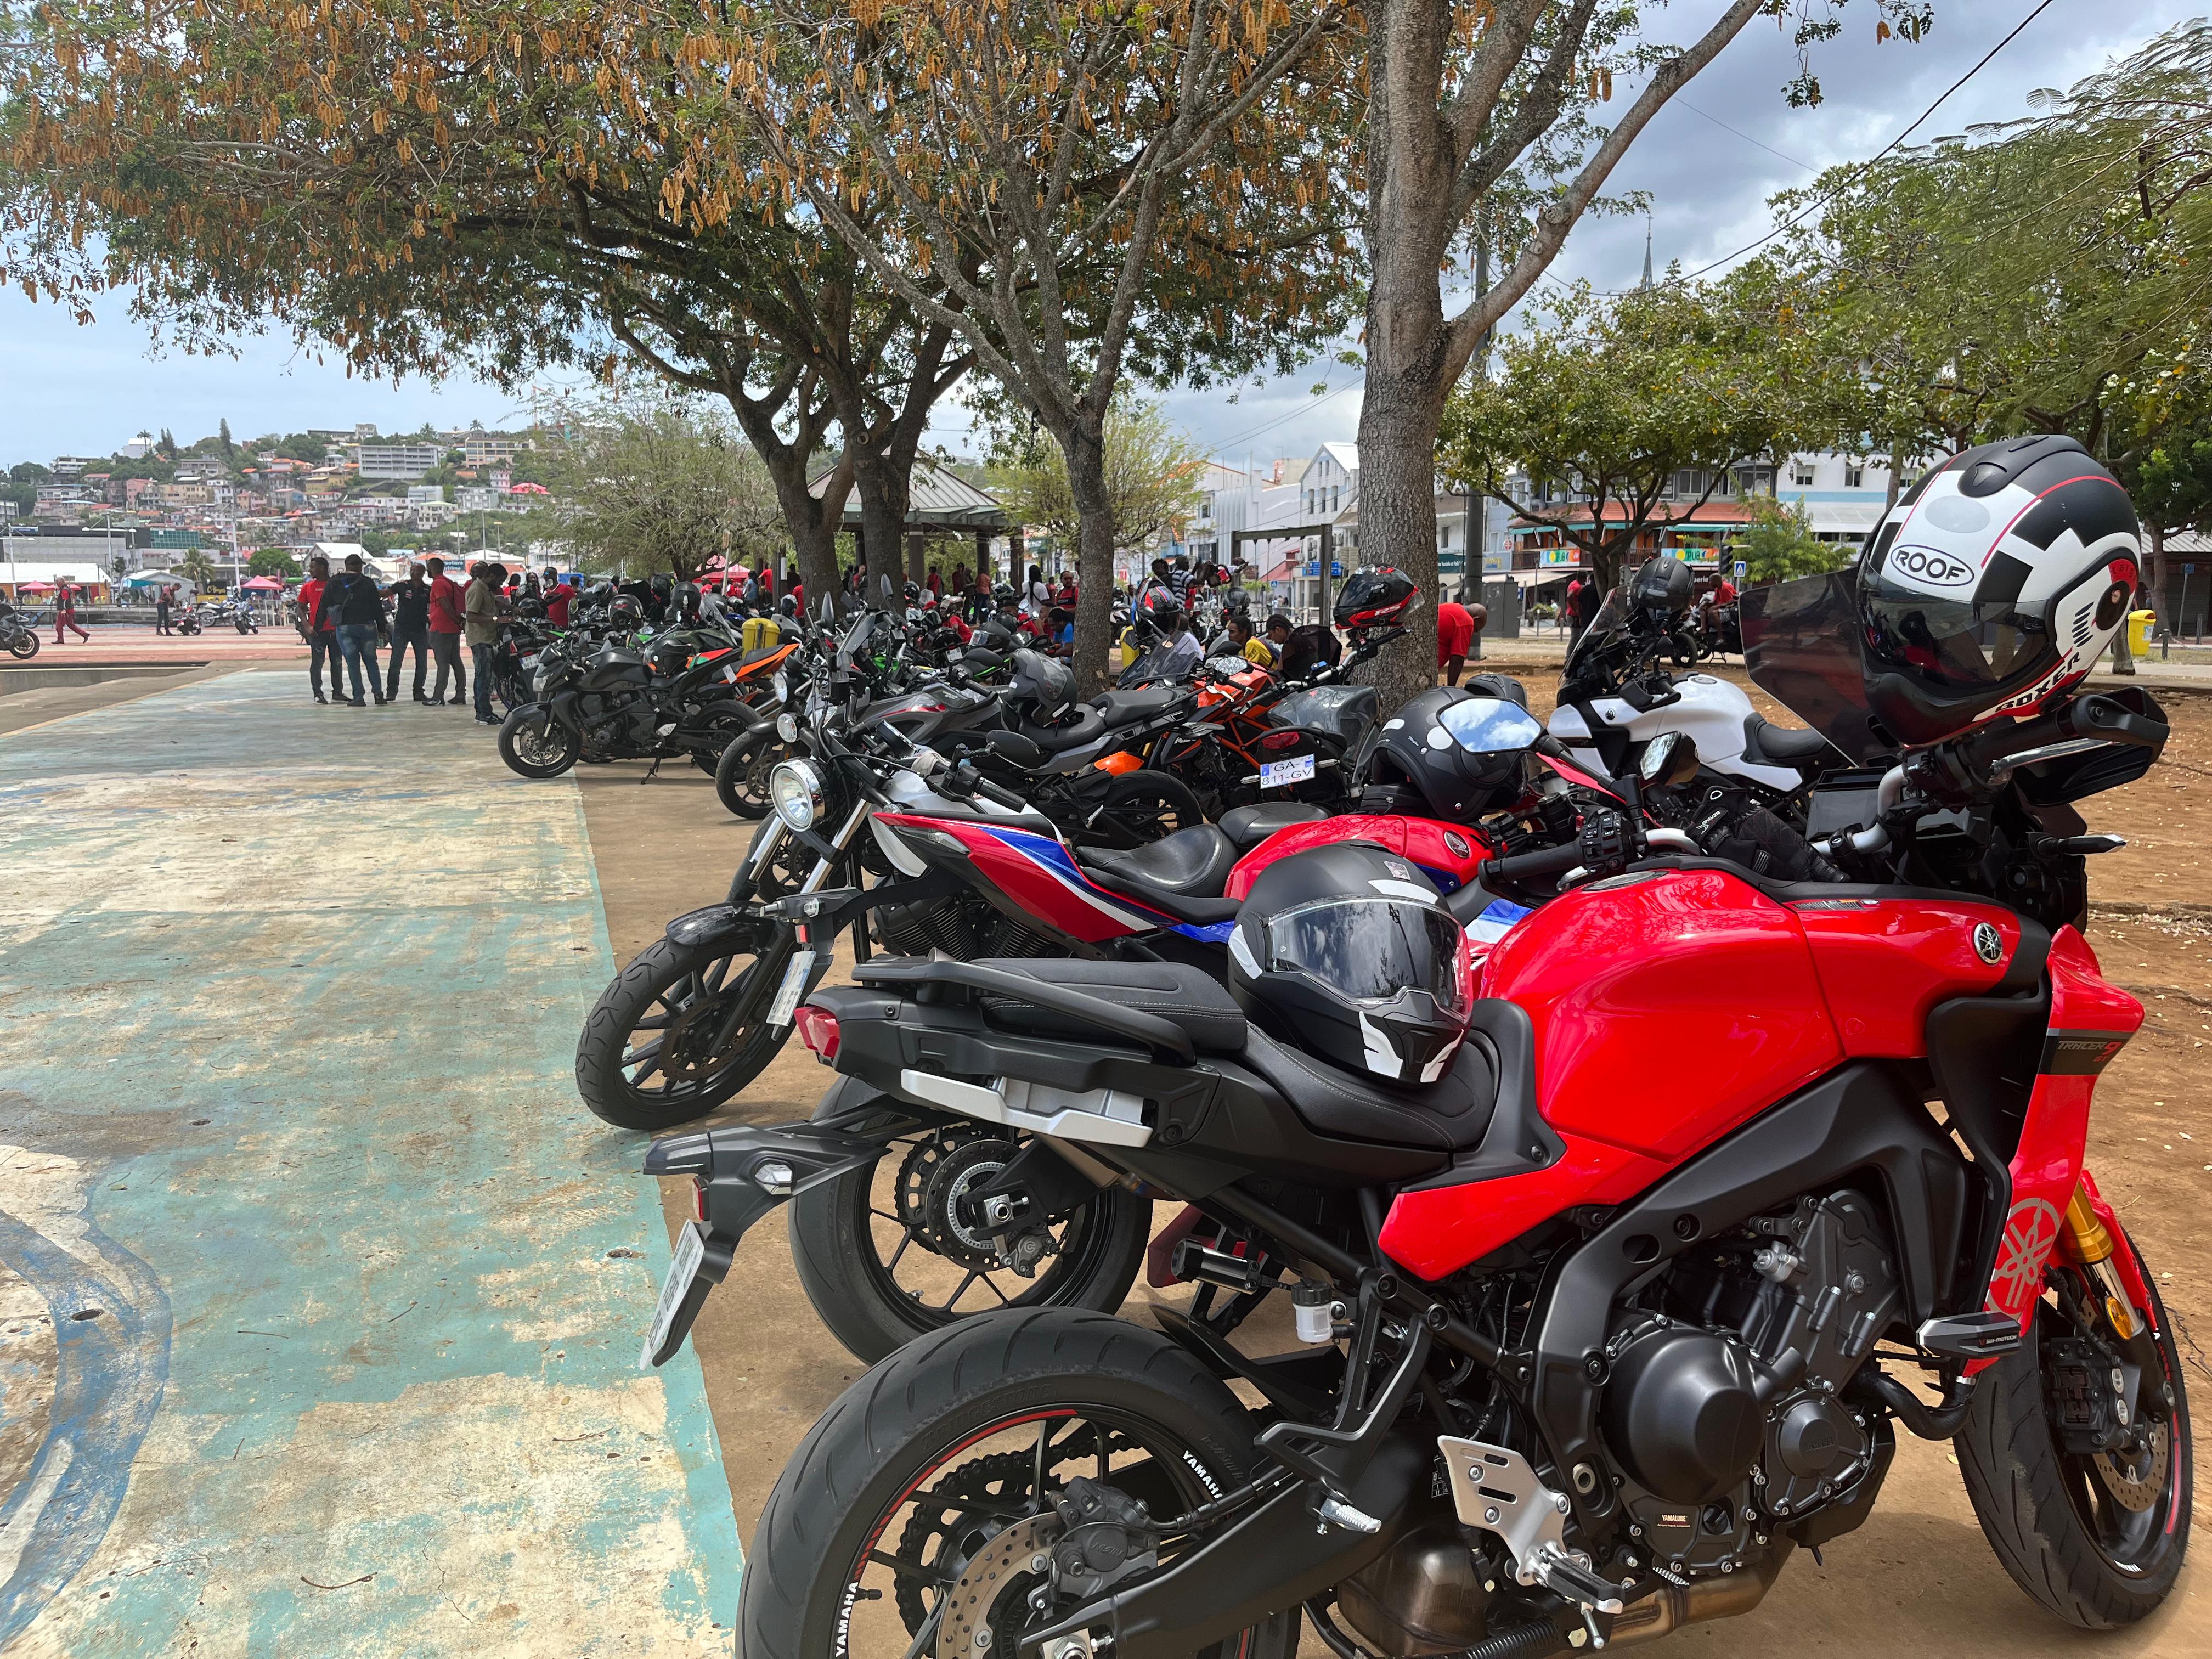     Des motards de Martinique se mobilisent contre l'instauration du contrôle technique obligatoire

